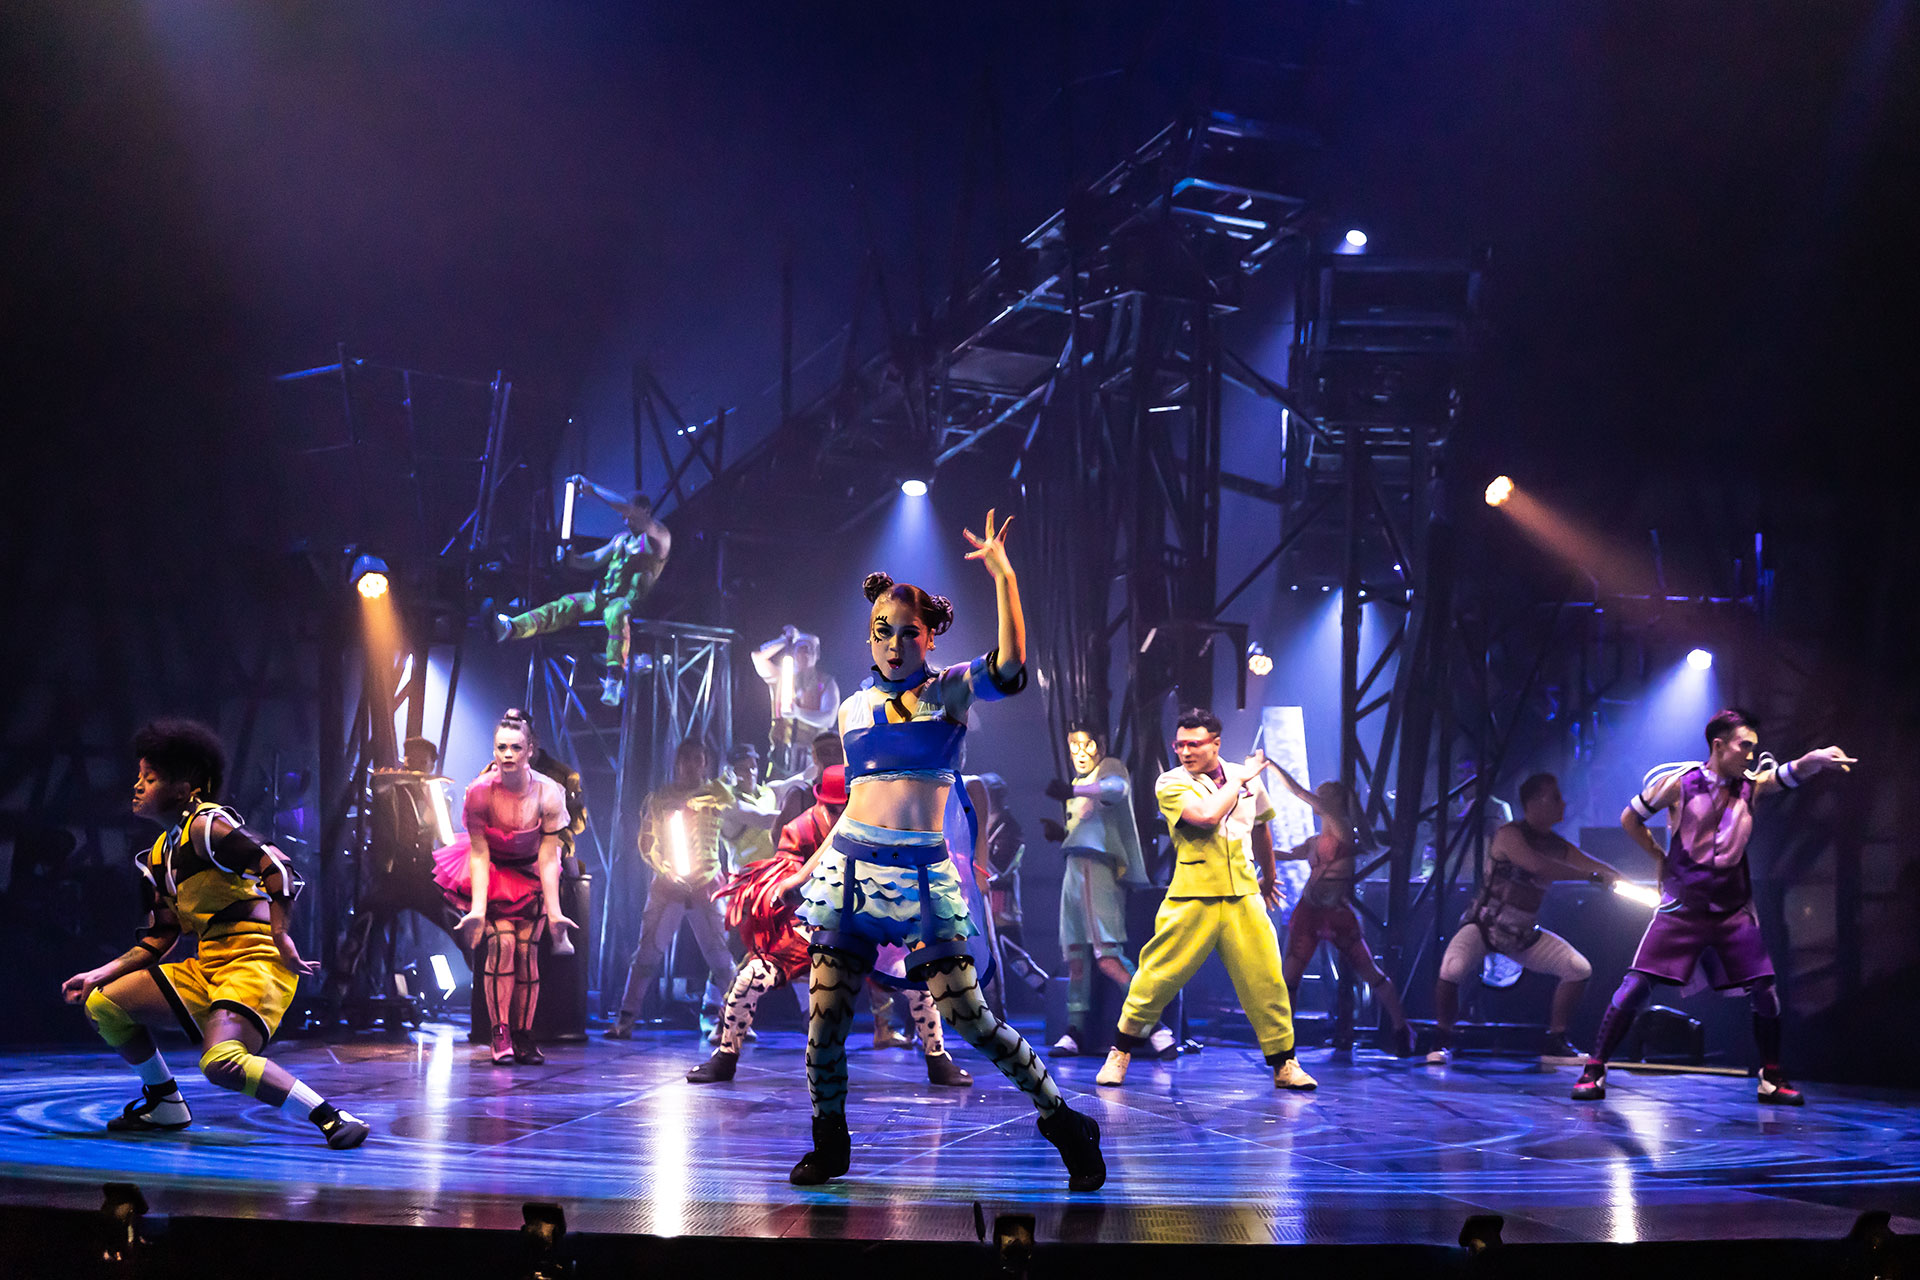 La compañía fundada en 1984 por Gilles Ste-Croix y Guy Laliberté está realizando una gira por Latinoamérica y tras presentarse con gran éxito en Brasil y Chile, realizará su última parada en la ciudad de Bogotá antes de llegar a Buenos Aires
(Prensa Cirque du Soleil)